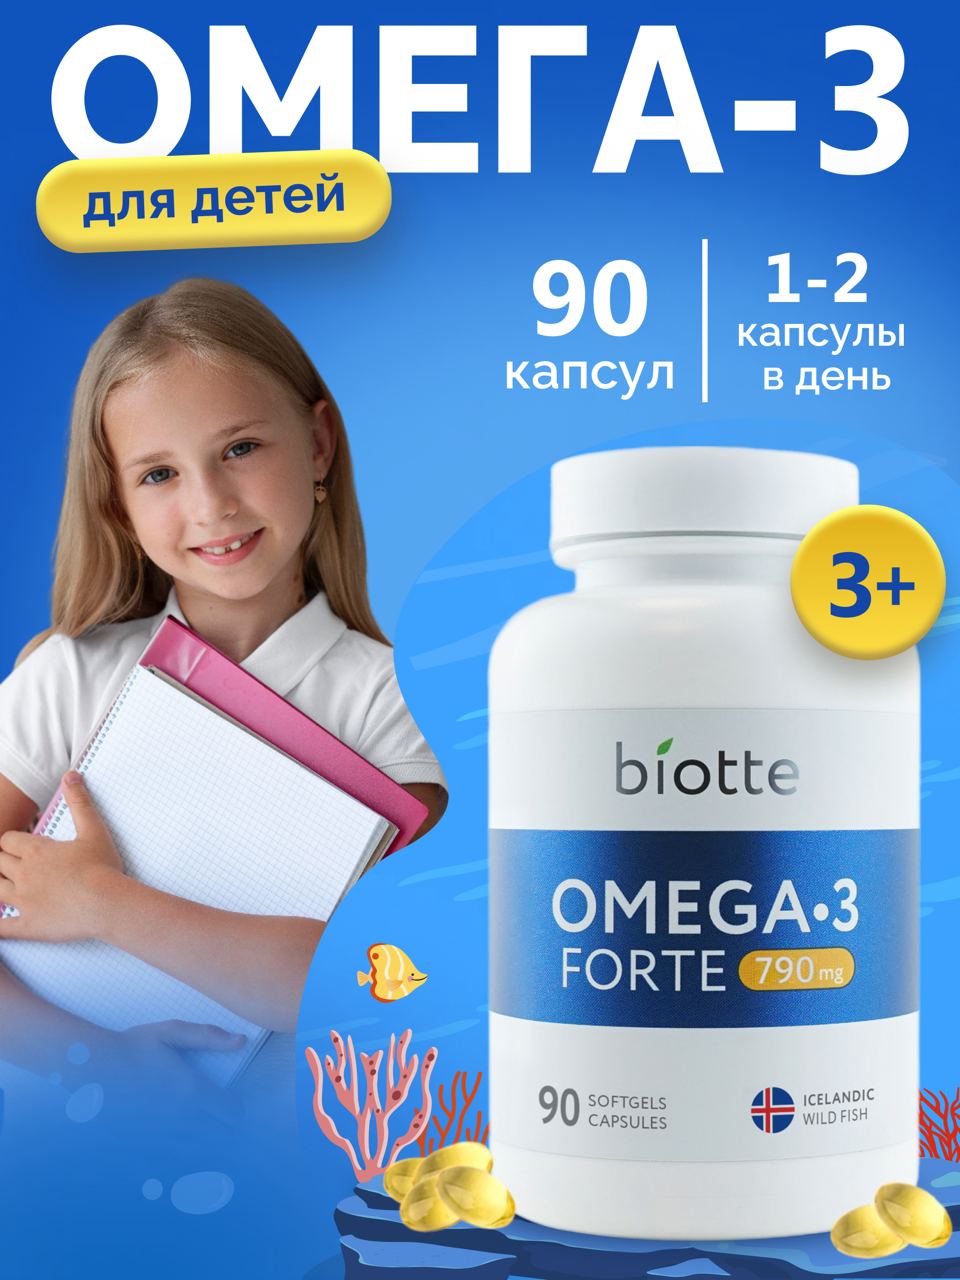 Омега-3 форте BIOTTE 790 mg fish oil премиум рыбий жир для детей подростков взрослых 90 капсул - фото 1